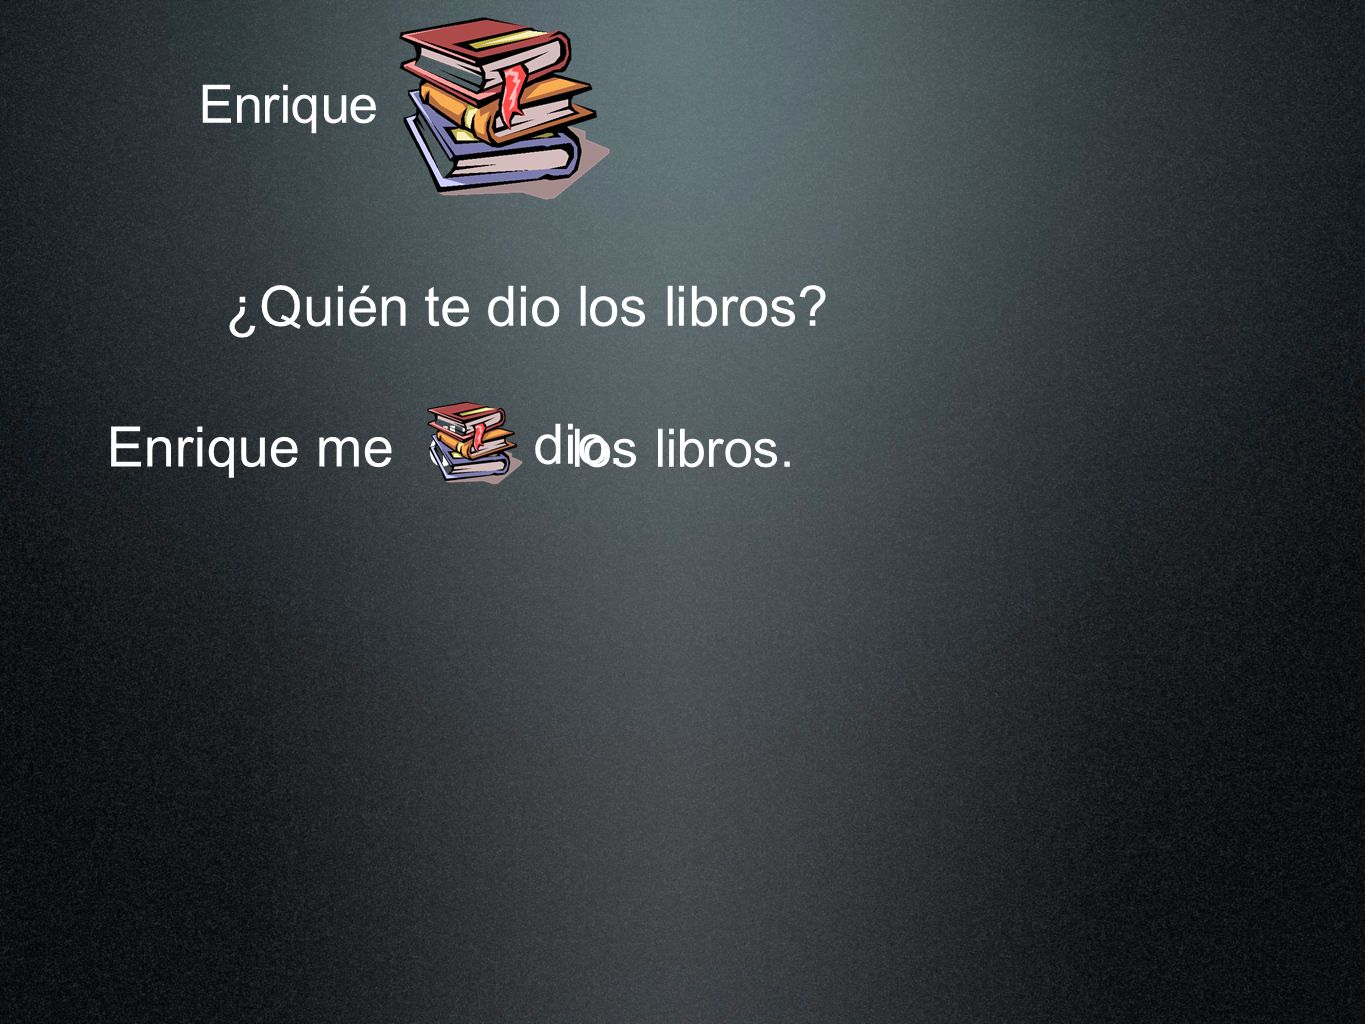 Enrique ¿Quién te dio los libros Enrique me los libros. dio dio. los